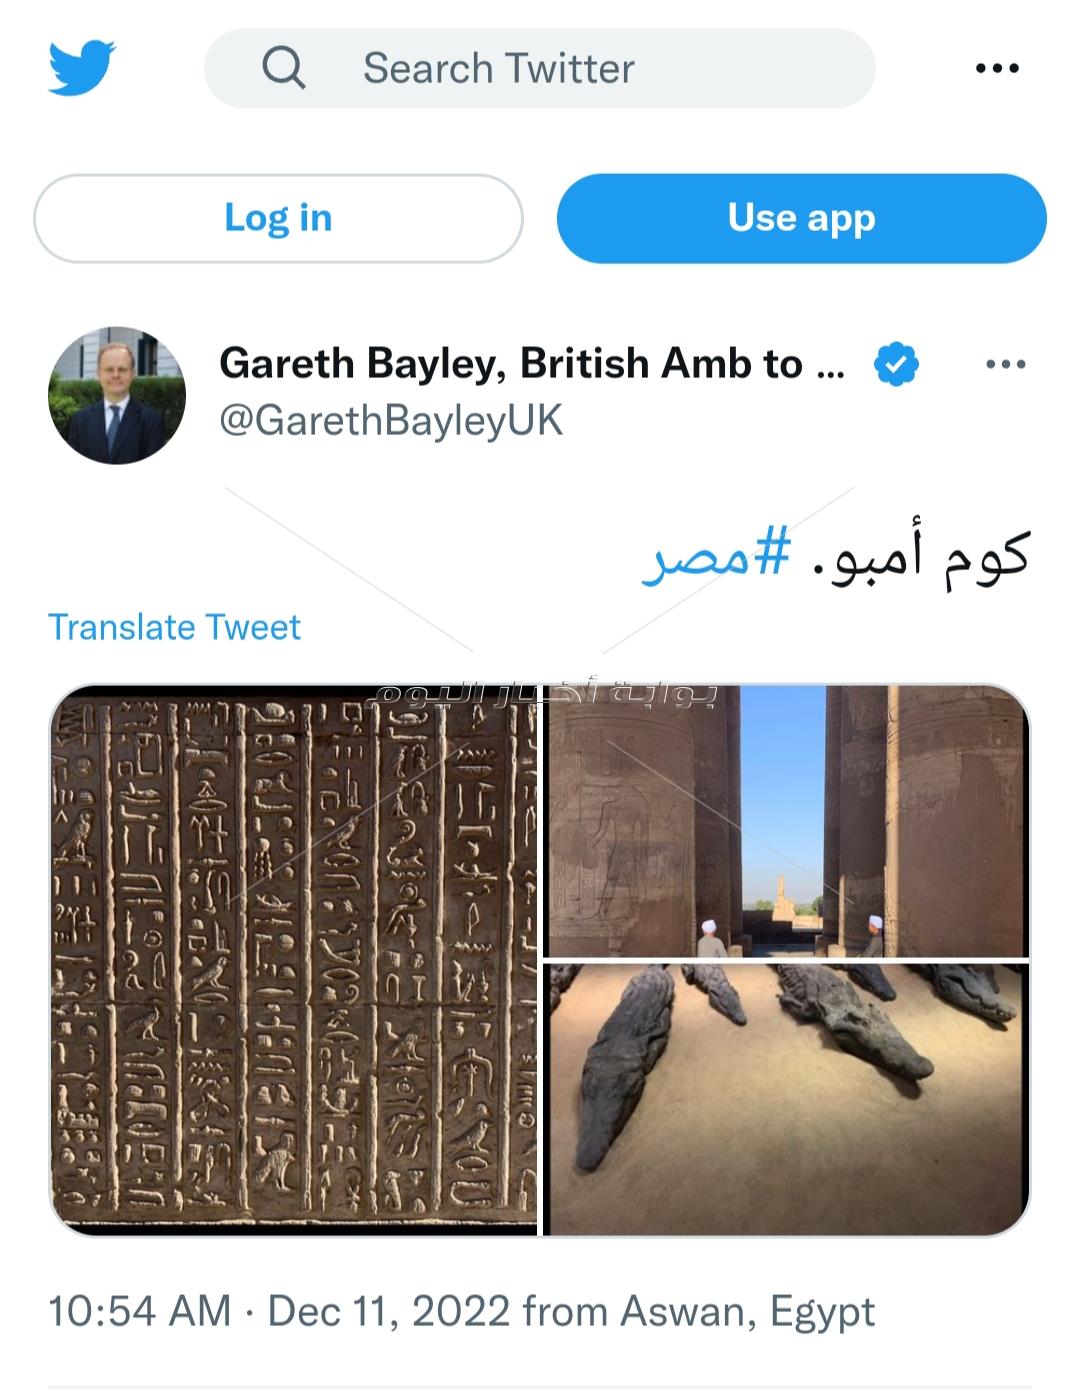 السفير البريطاني في مصر يعرب عن عشقه للحضارة المصرية و يروج لها بطريقته الخاصة